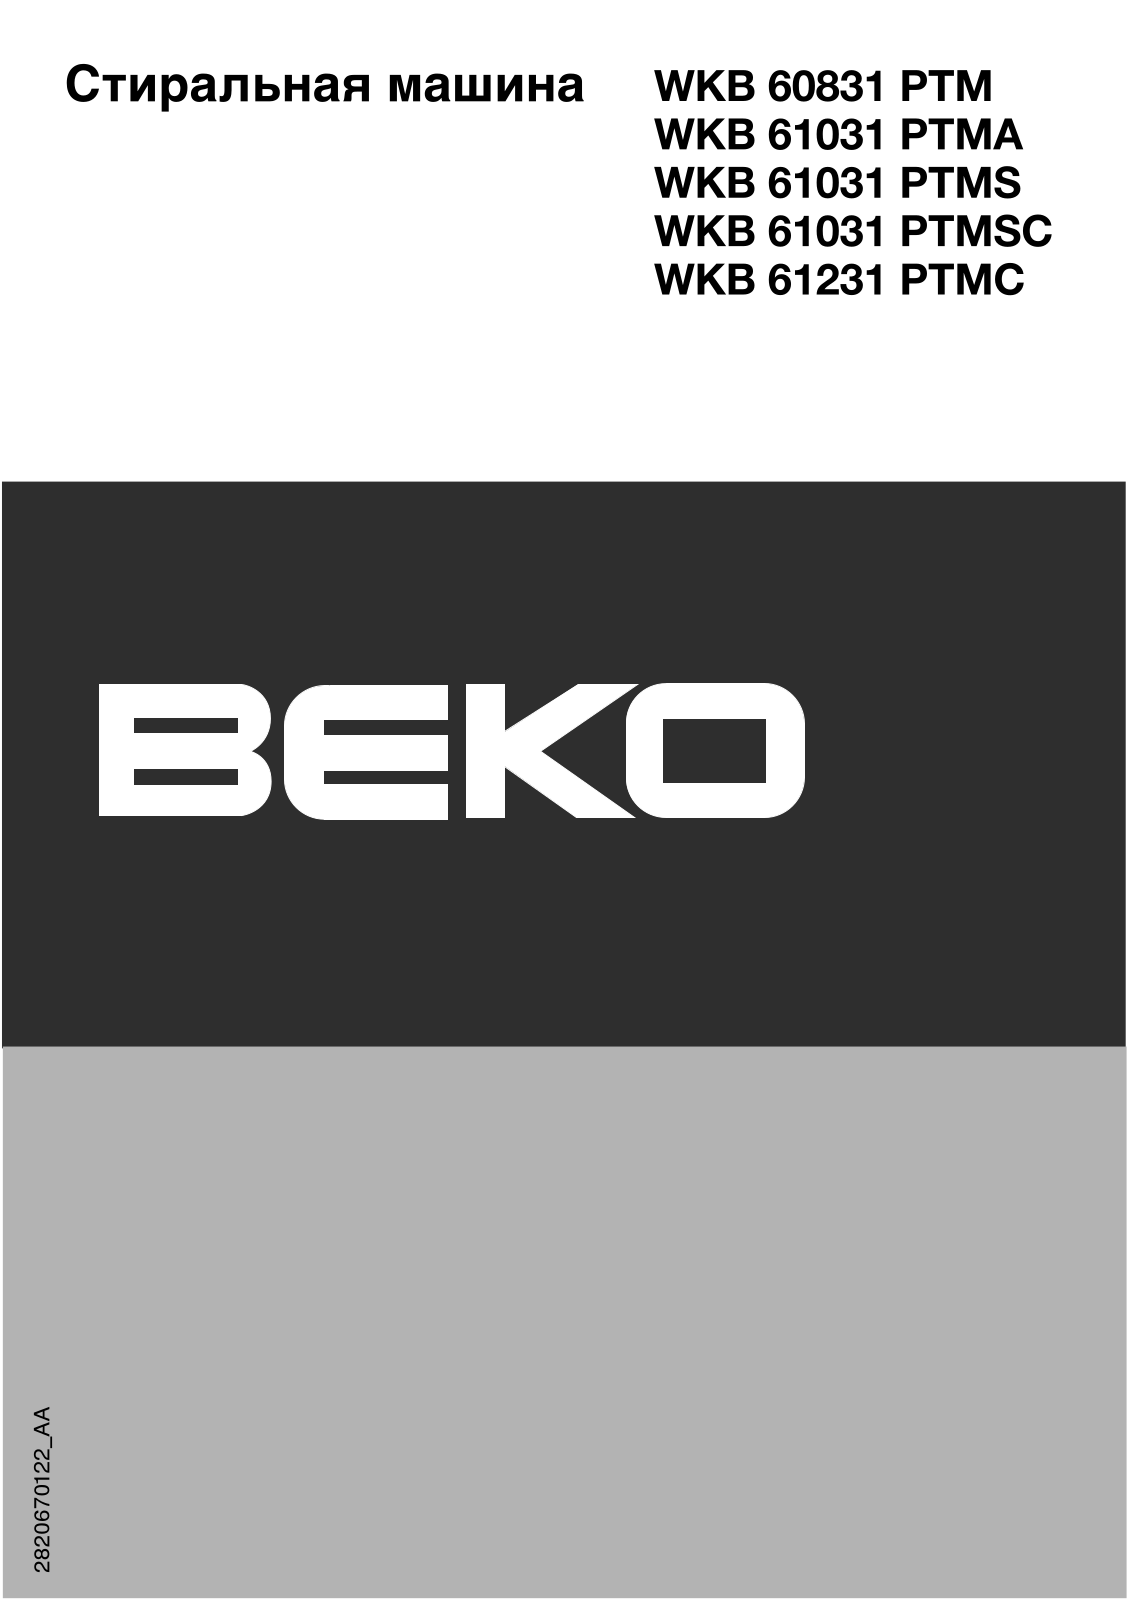 Beko WKB 61231PTMC, WKB 61031PTMA, WKB 60831PTM, WKB 61031 PTMS, WKB 61031PTMSC User Manual